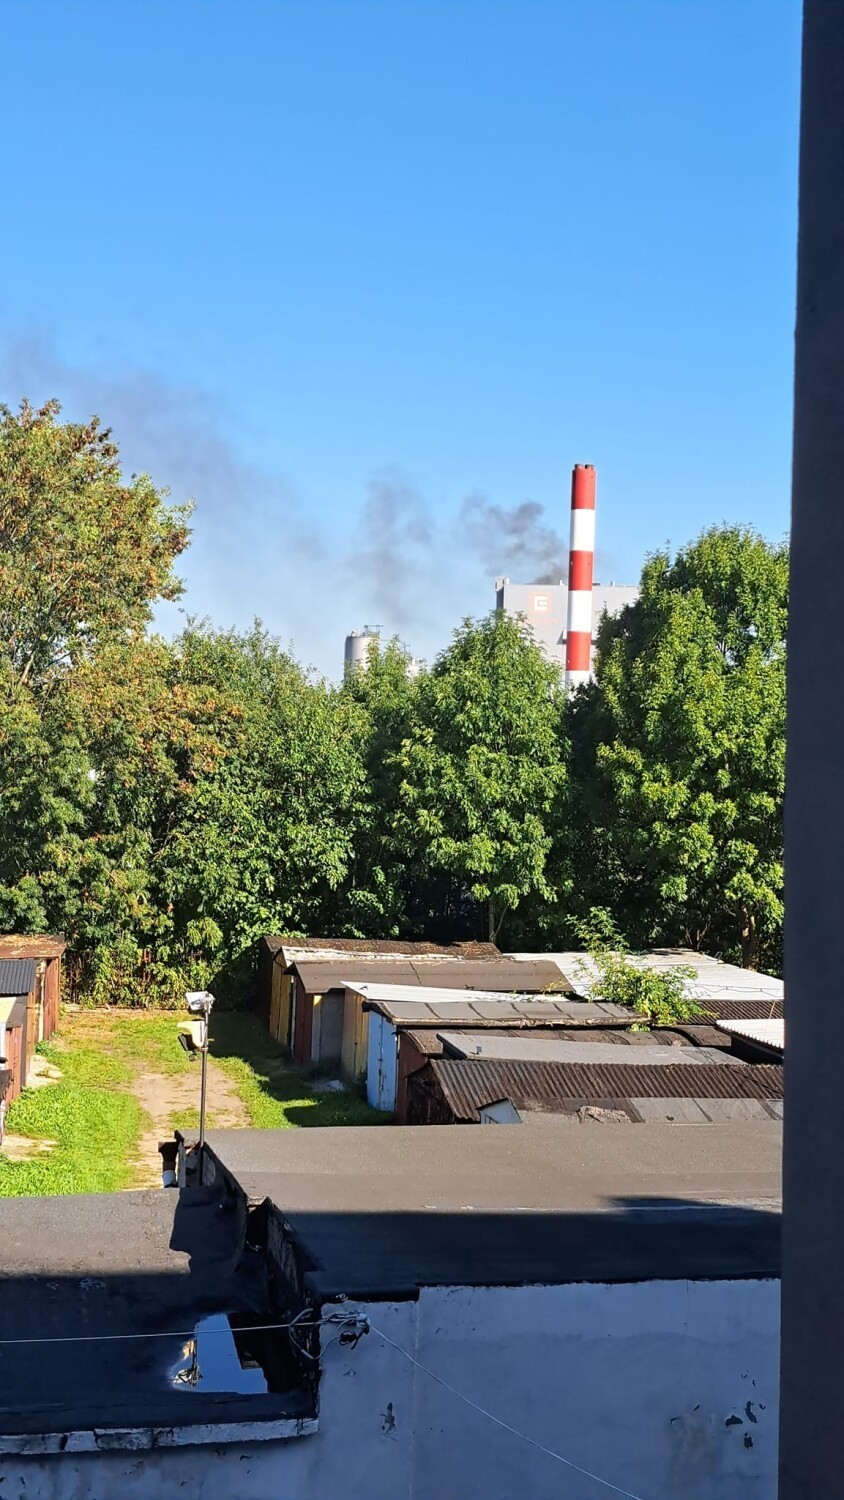 Pożar w elektrociepłowni w Chorzowie. Doszło do zapłonu węgla. Jedenaście zastępów staży w akcji!